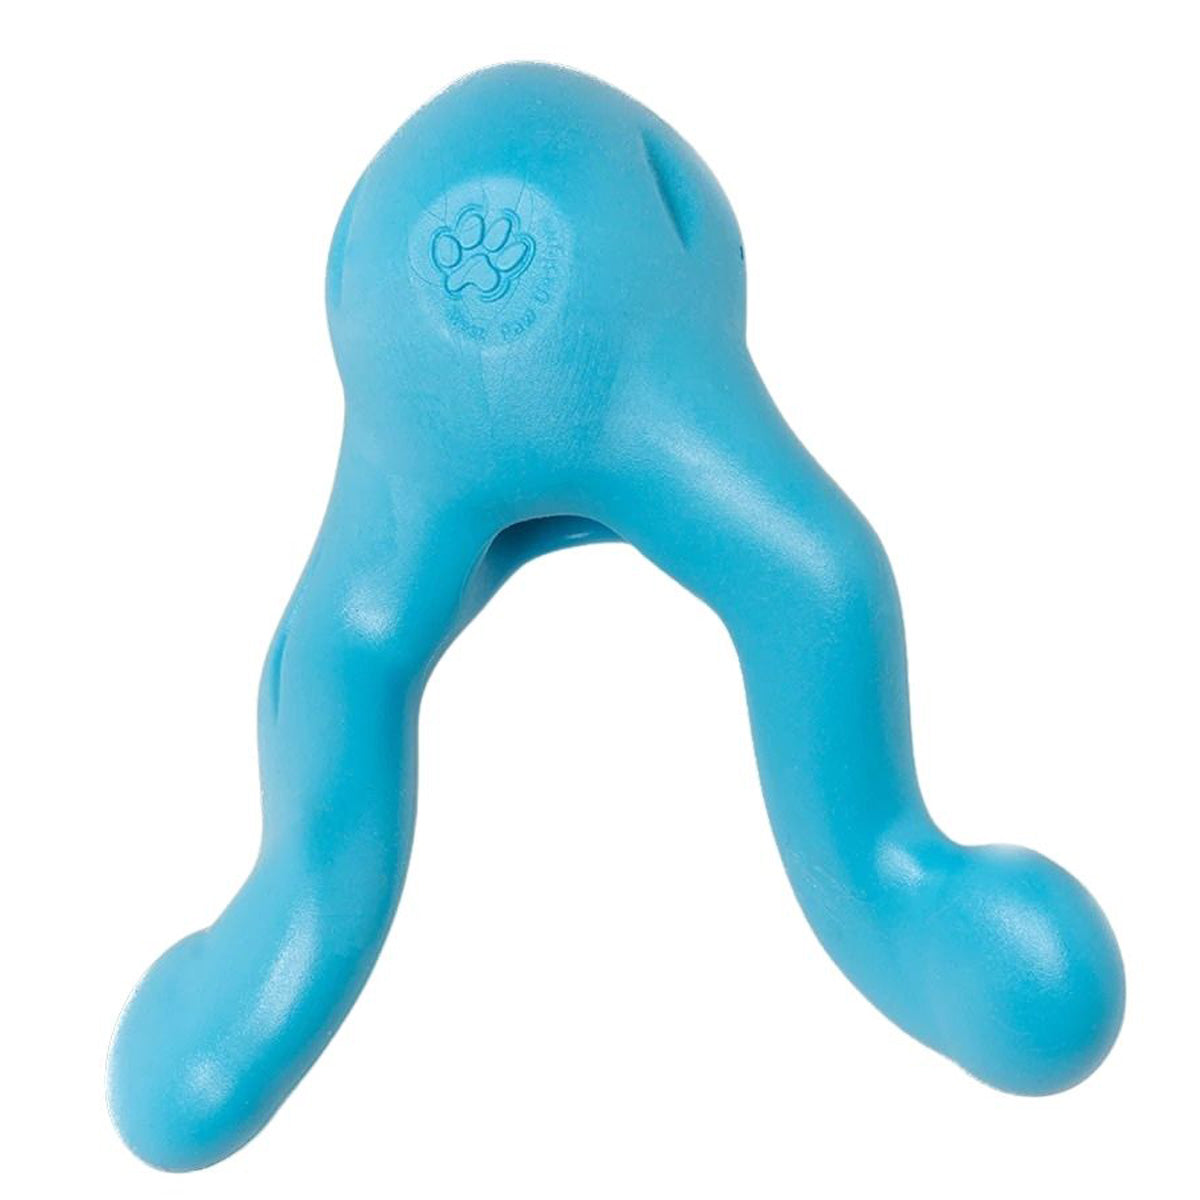 West Paw Bumi Dog Toy - Blue - Large